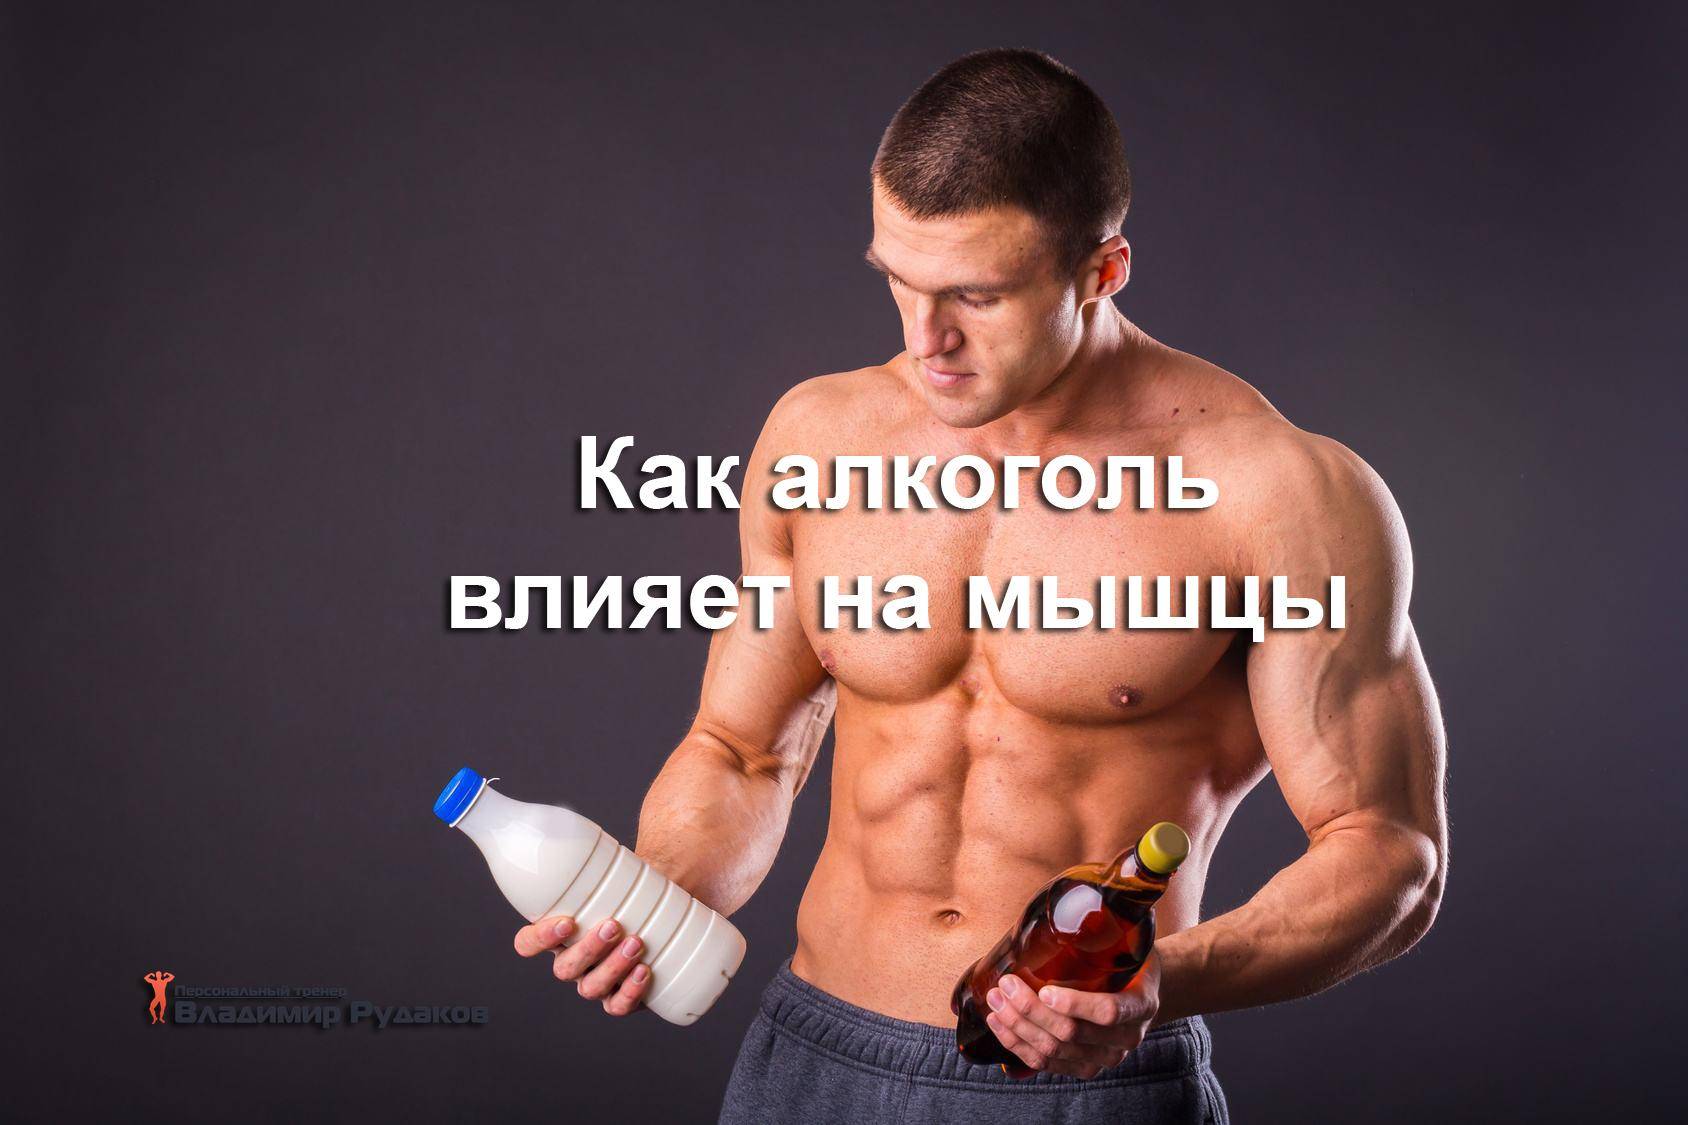 Протеин и алкоголь: как алкоголь влияет на мышцы? - promusculus.ru
протеин и алкоголь: как алкоголь влияет на мышцы? - promusculus.ru